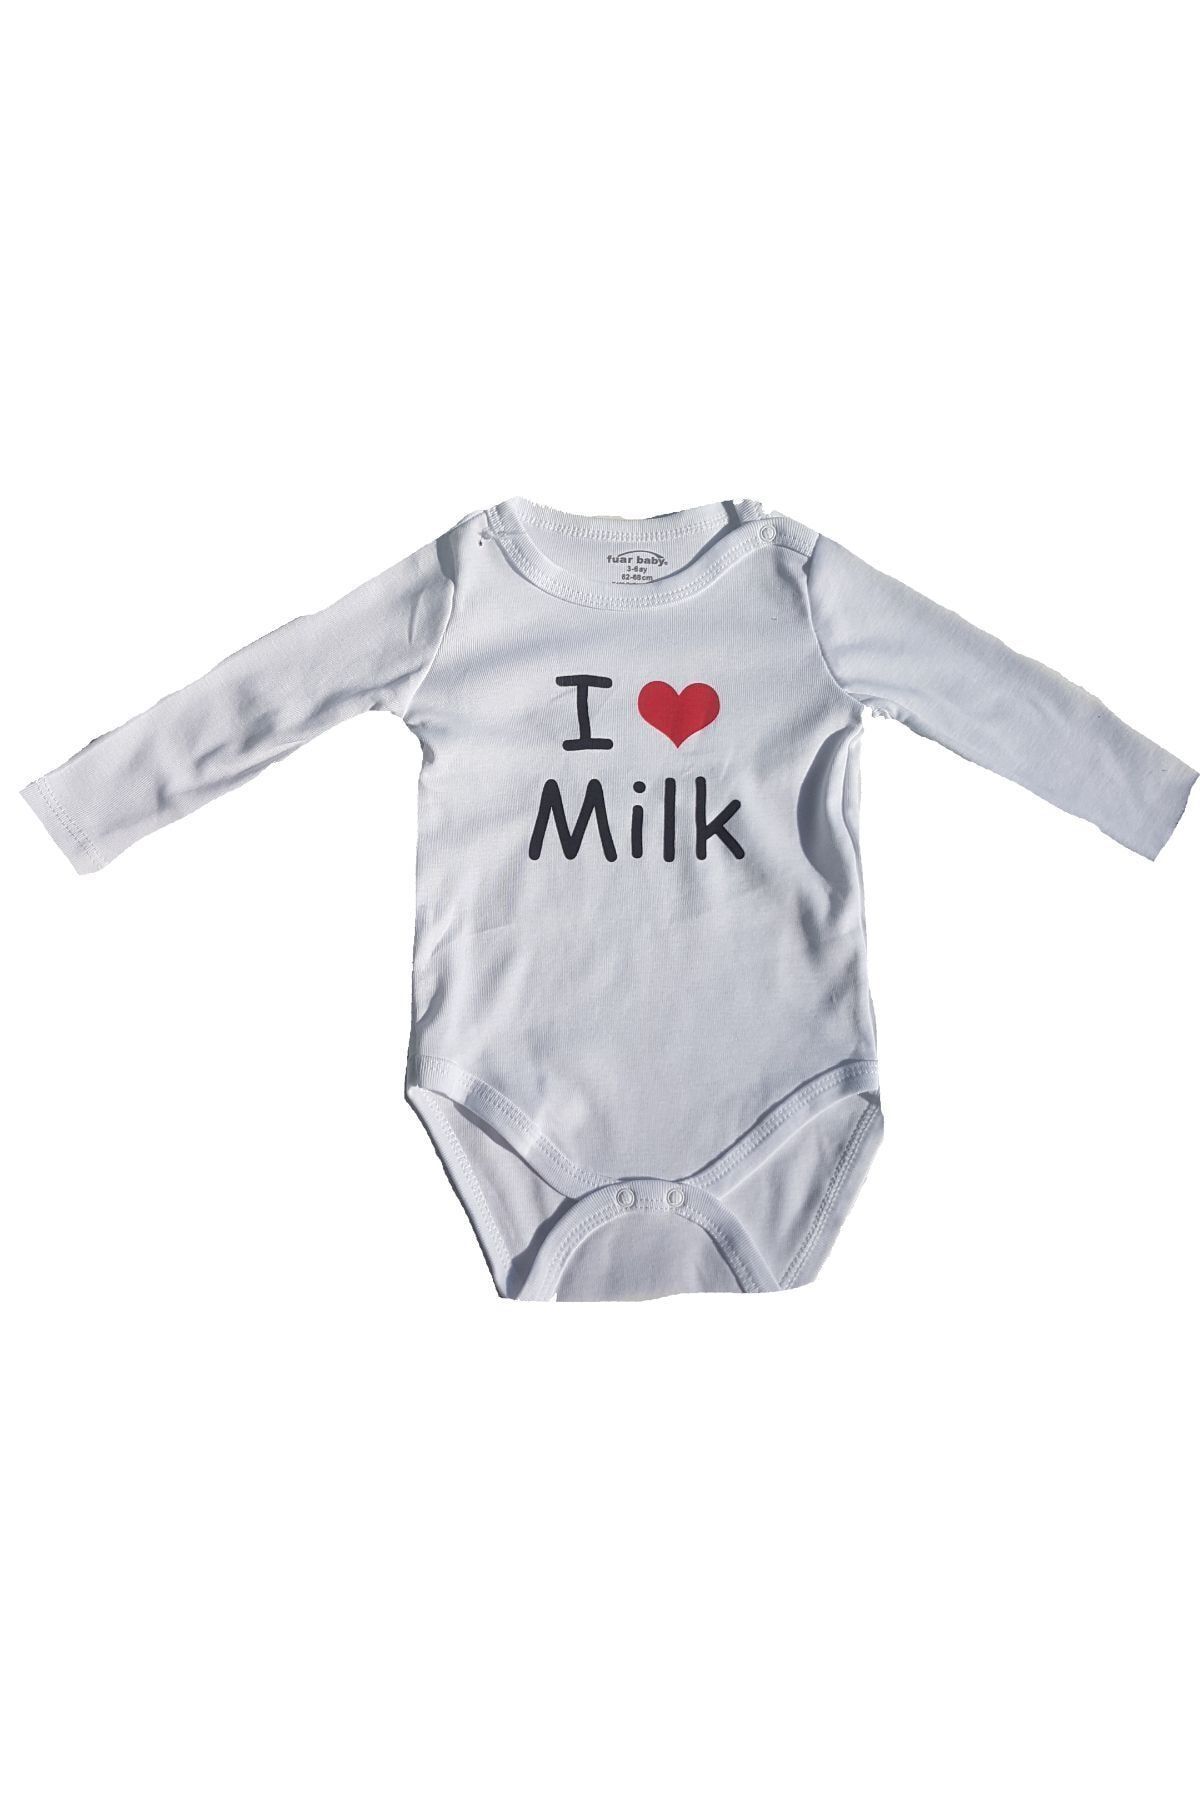 Fuar Baby Neşelibebek Fbbrs1860 I Love Milk, Sütü Seviyorum Uzun Kol Body Zıbın 18-24 Ay